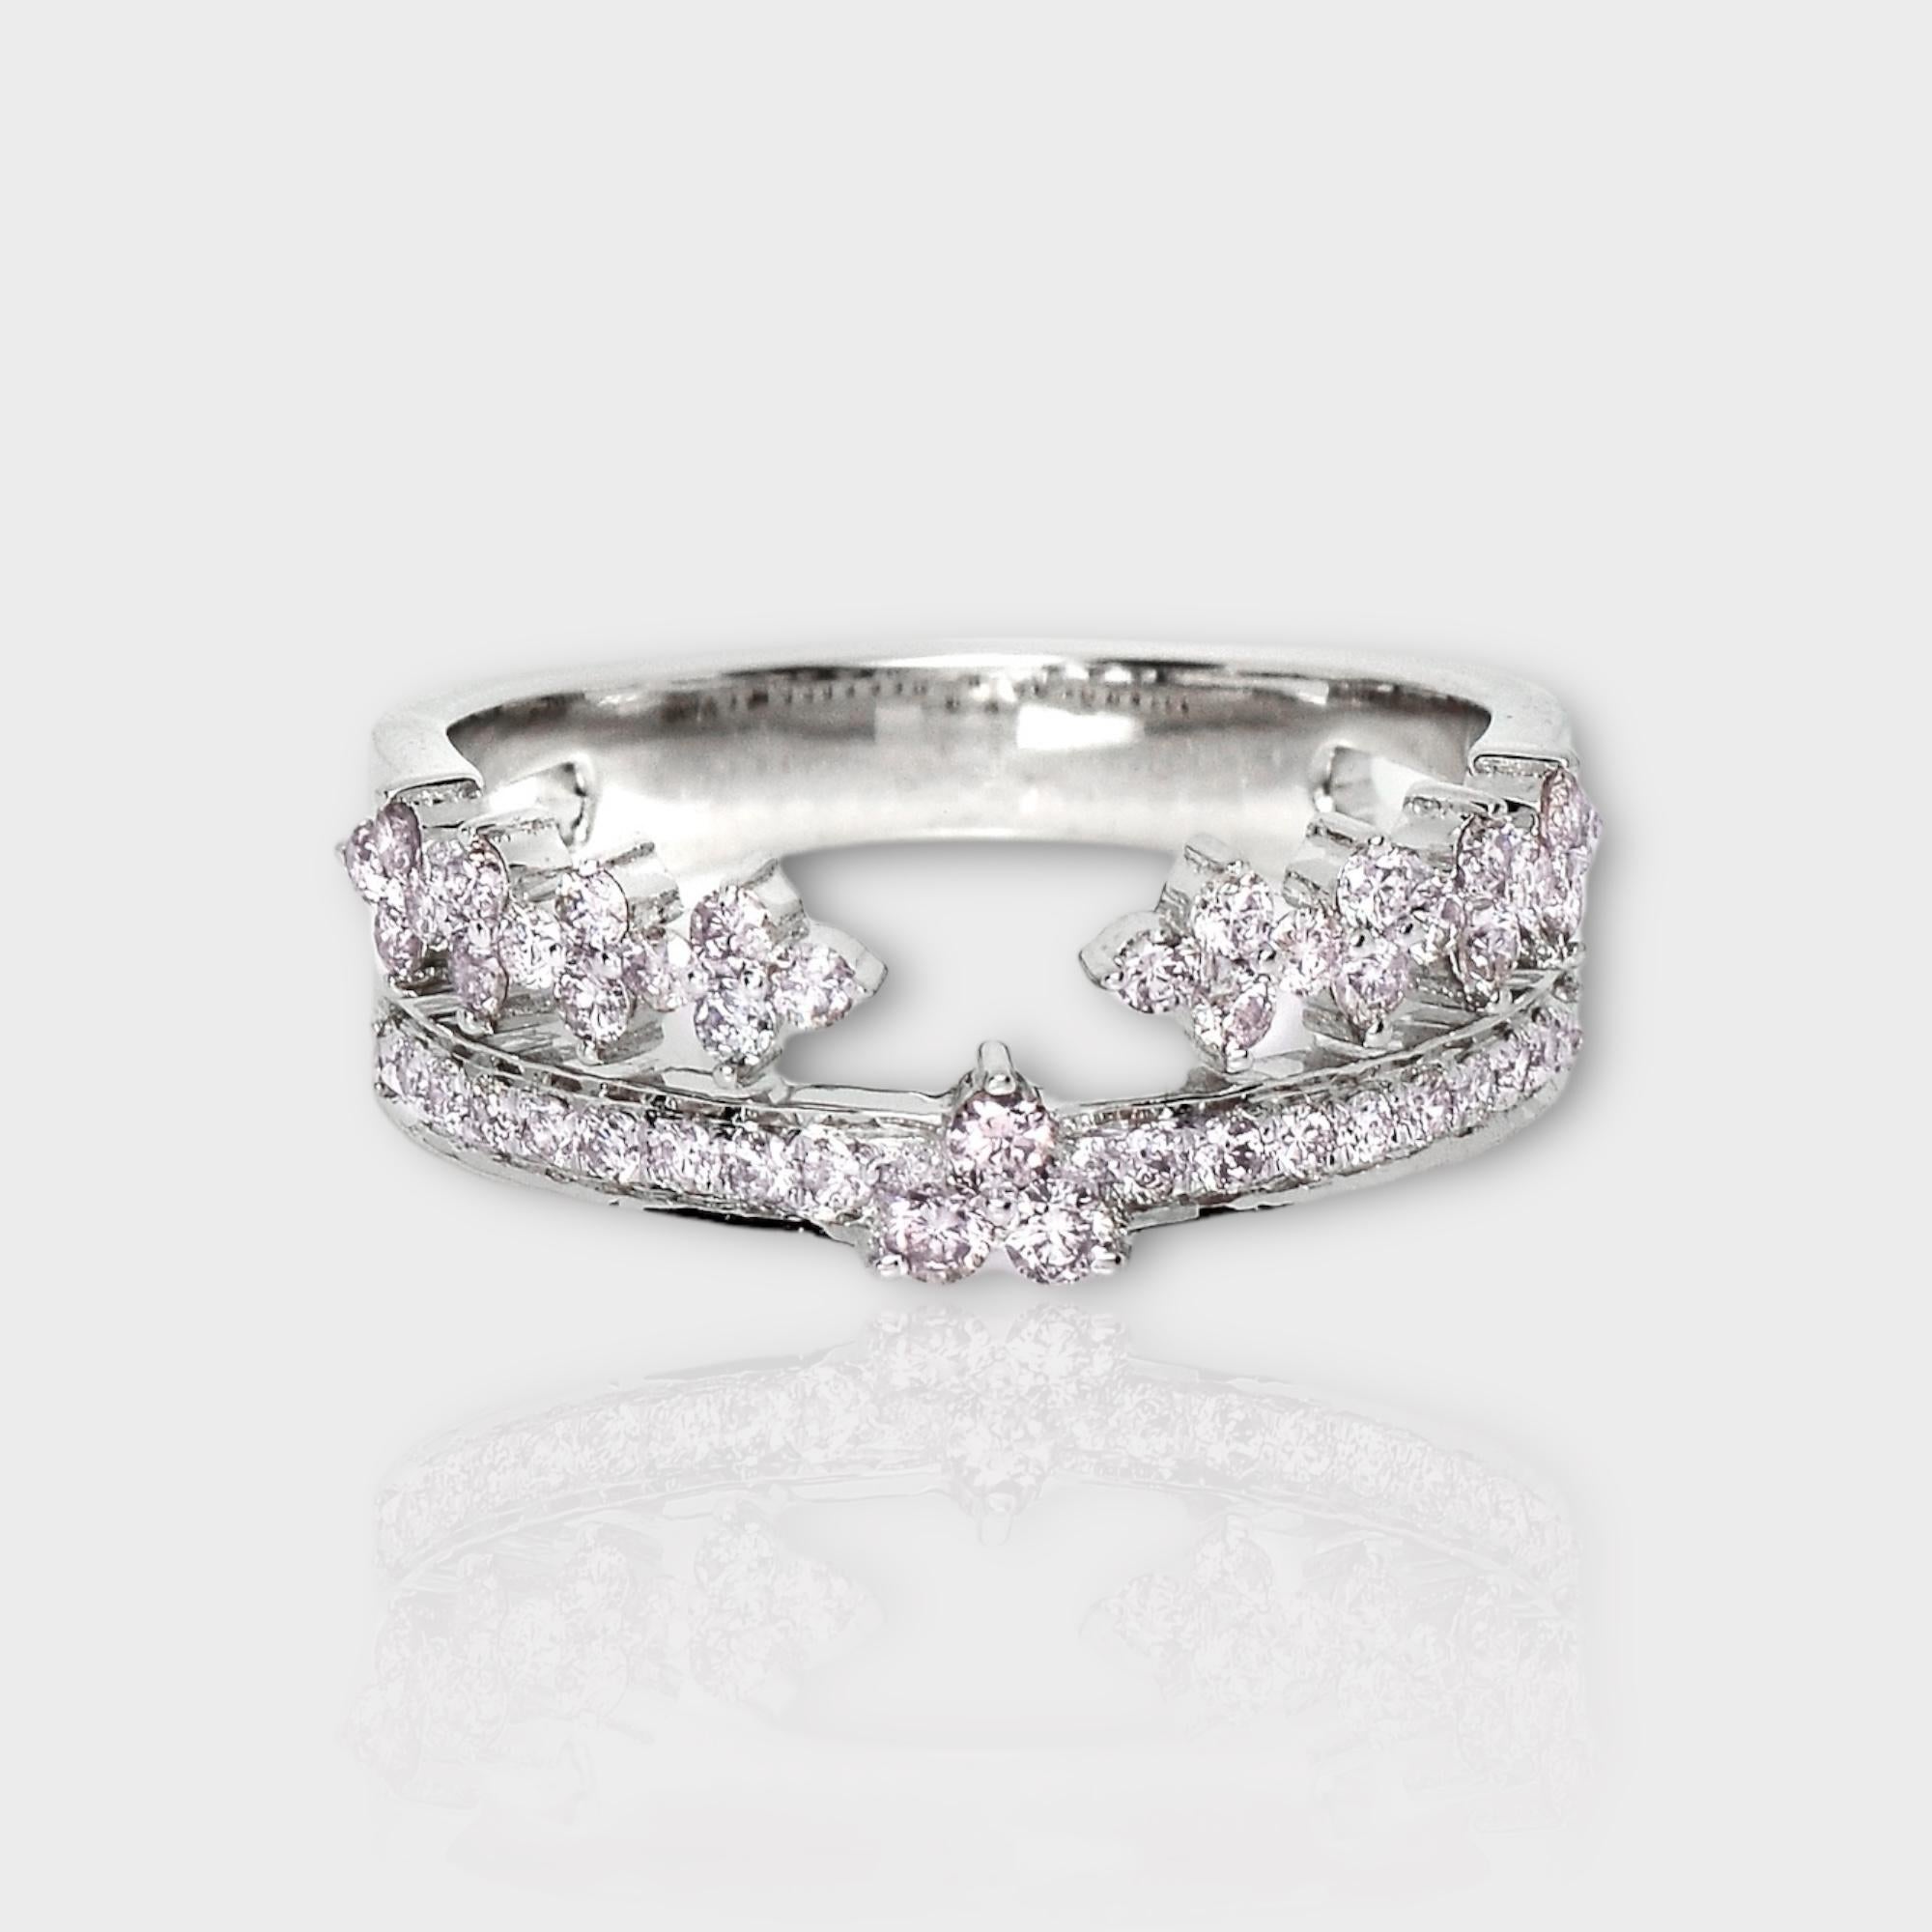 *IGI 14K 0.52 ct Natural Pink Diamonds Vintage Crown  Bague de fiançailles Design/One*

Ce bracelet présente un superbe design avec une couronne vintage en or blanc 14 carats. Il est serti de diamants roses naturels pesant 0.52 carats.

Cette bague